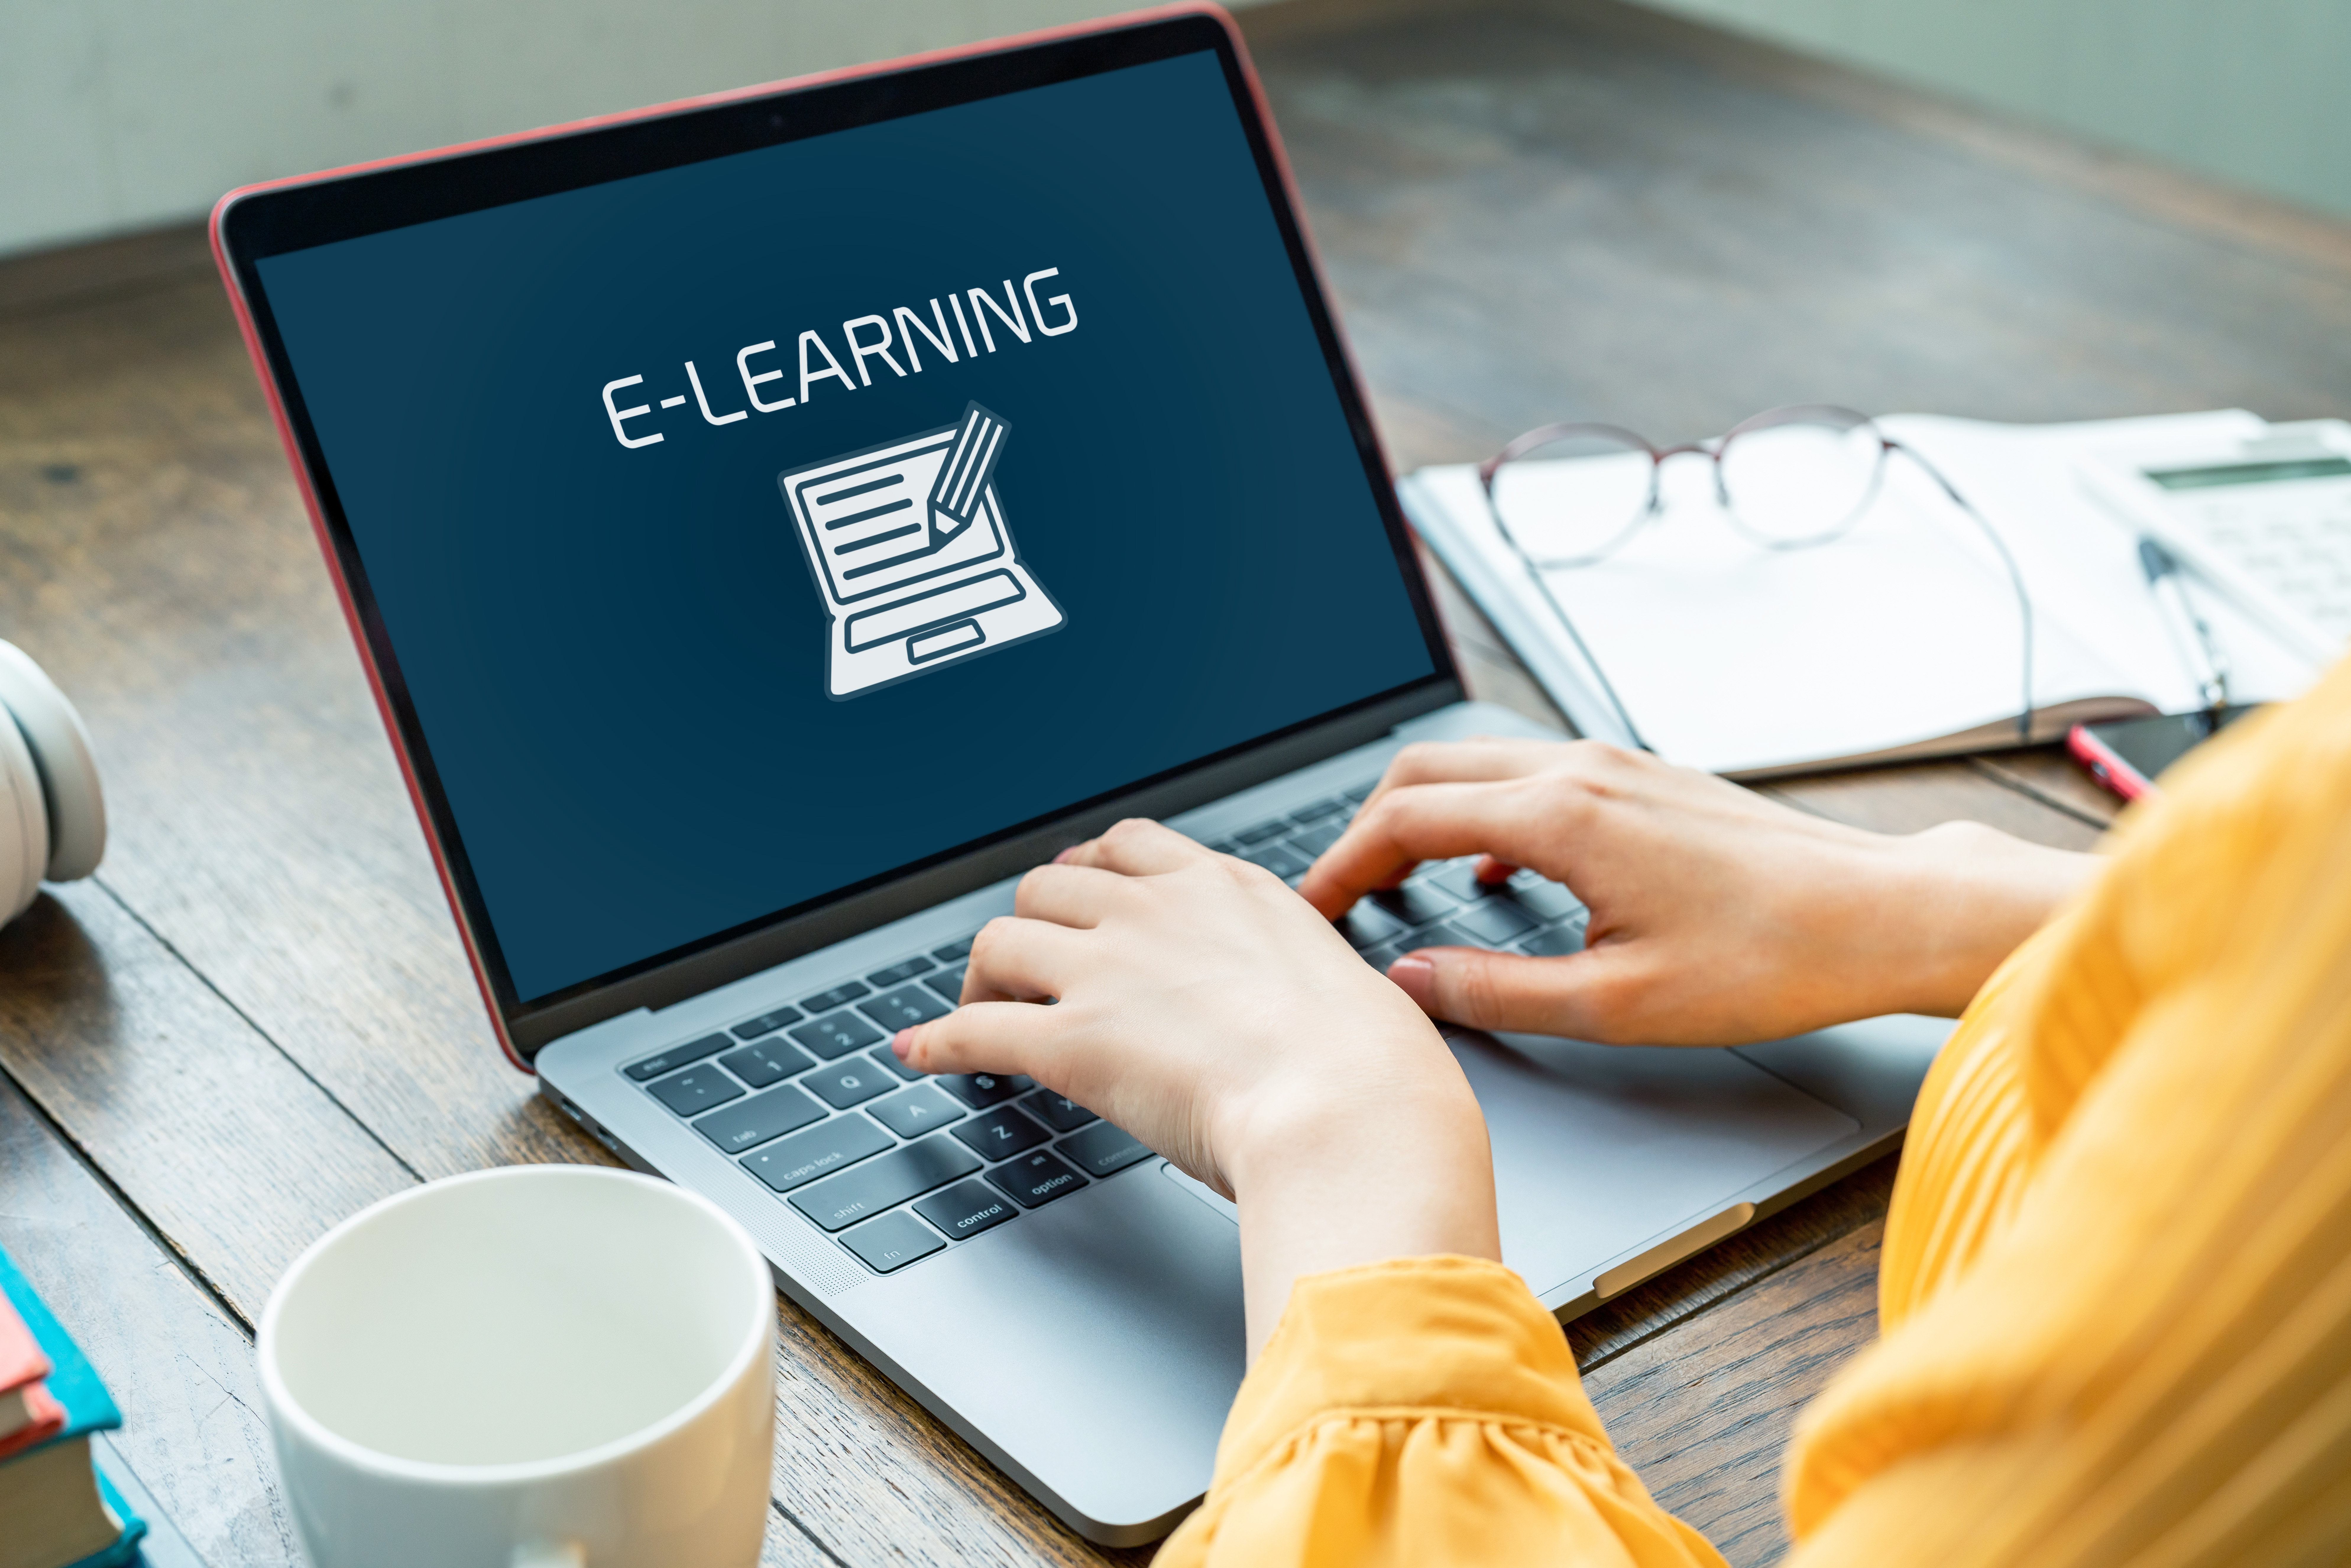 Wordpress компьютеры. Обучение в интернете картинки. Электронное обучение e-Learning. Интернет образование.